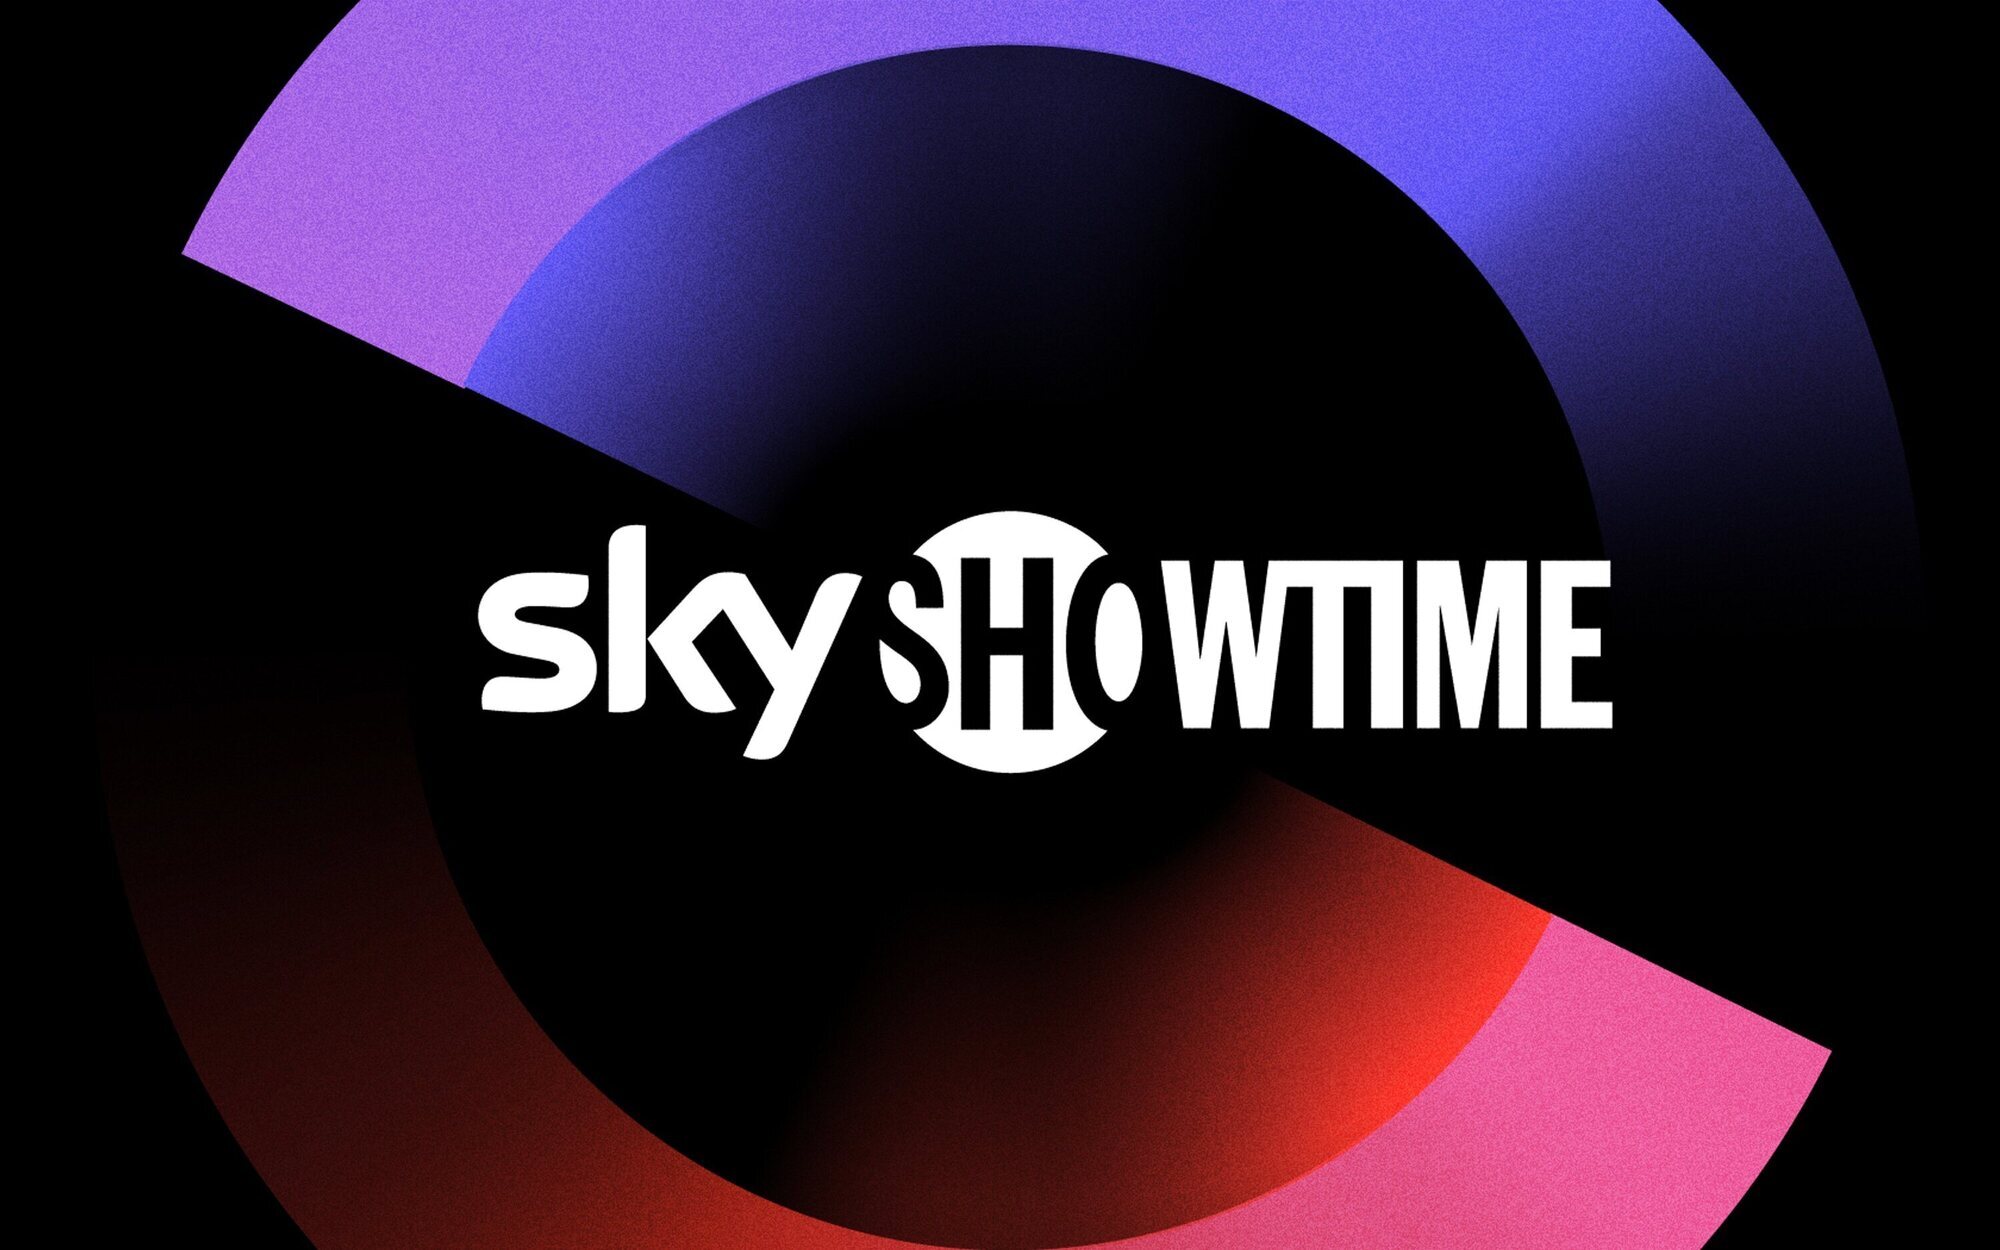 SkyShowtime llegará a España en 2022 con las series de Paramount+, Peacock y mucho más